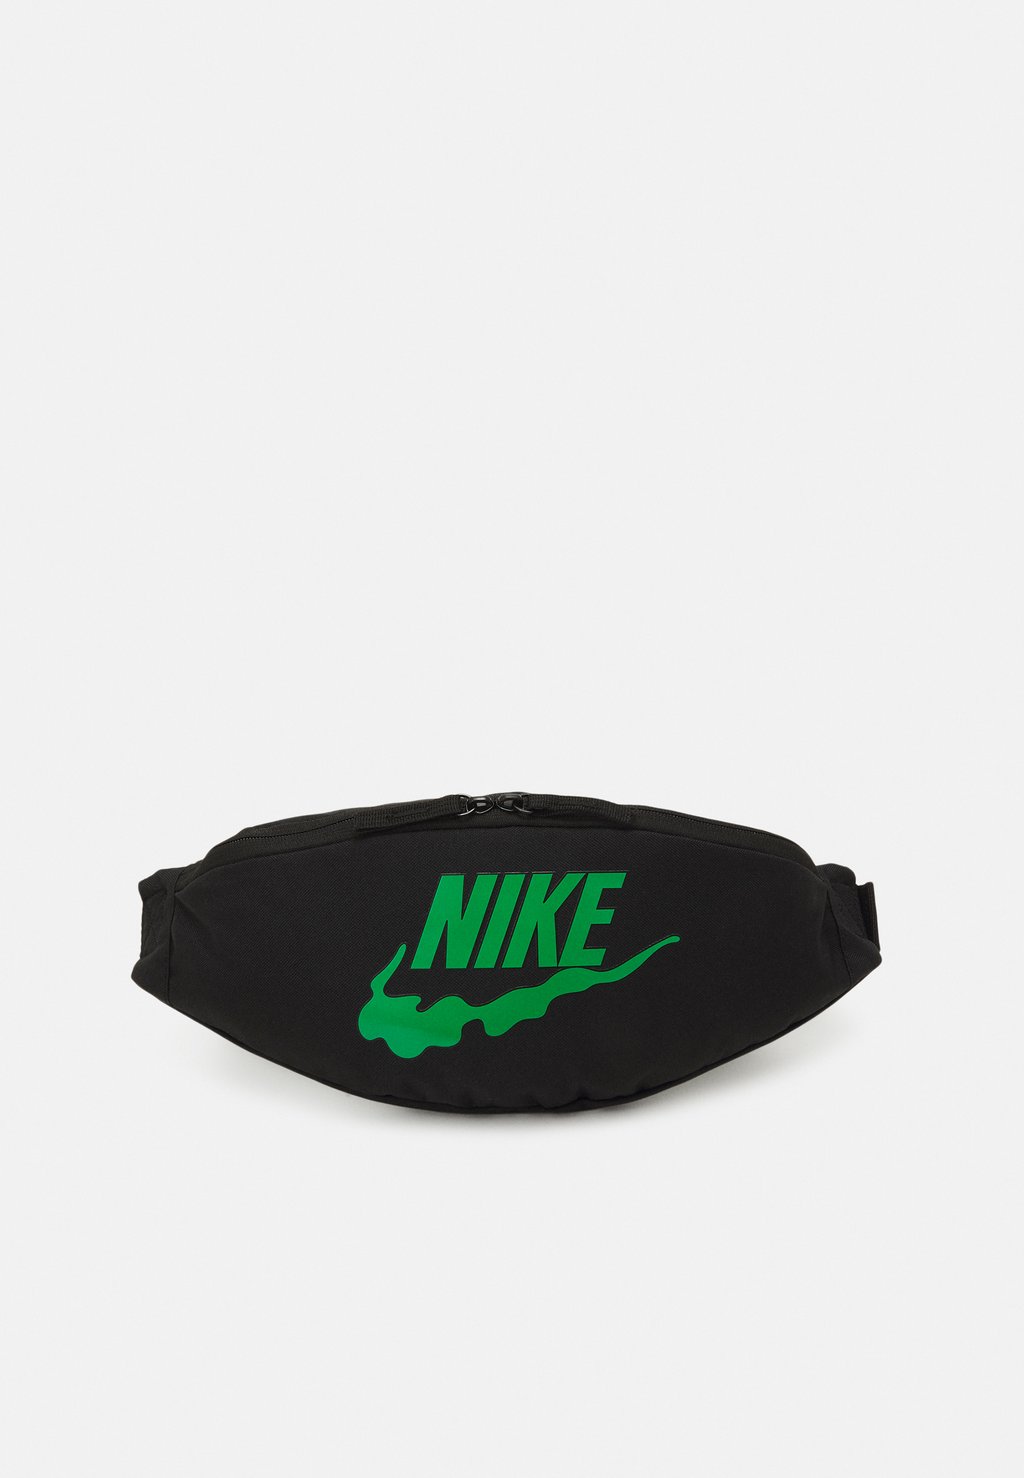 Поясная сумка Unisex Nike, цвет black/stadium green